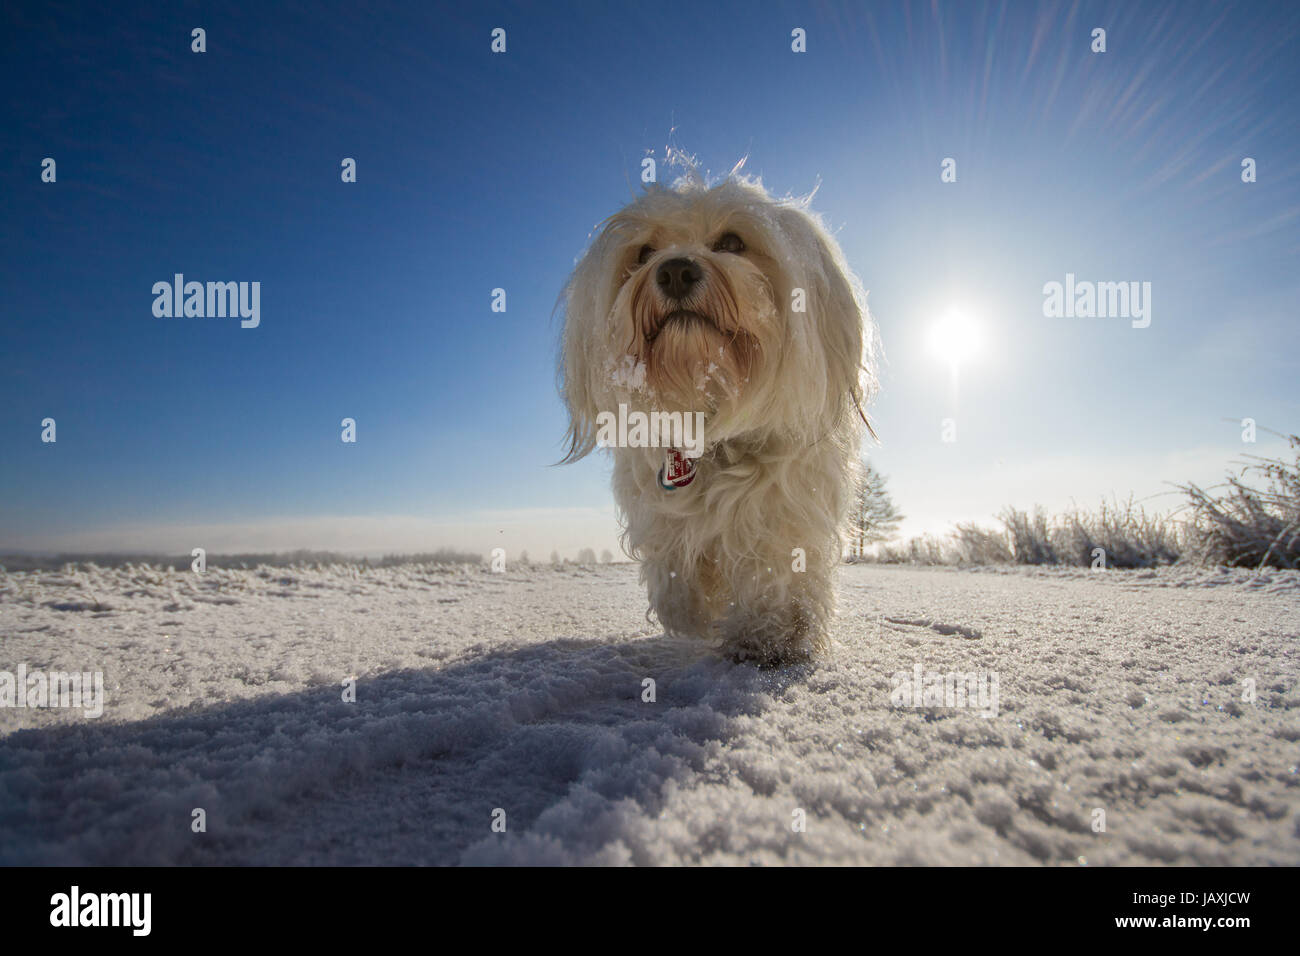 Ein Hund läuft gemächlich auf den Fotografen zu und blickt leicht über die Kamera hinweg. Im Rücken des Hundes strahlt die Sonne über die Winterlandschaft. Stock Photo